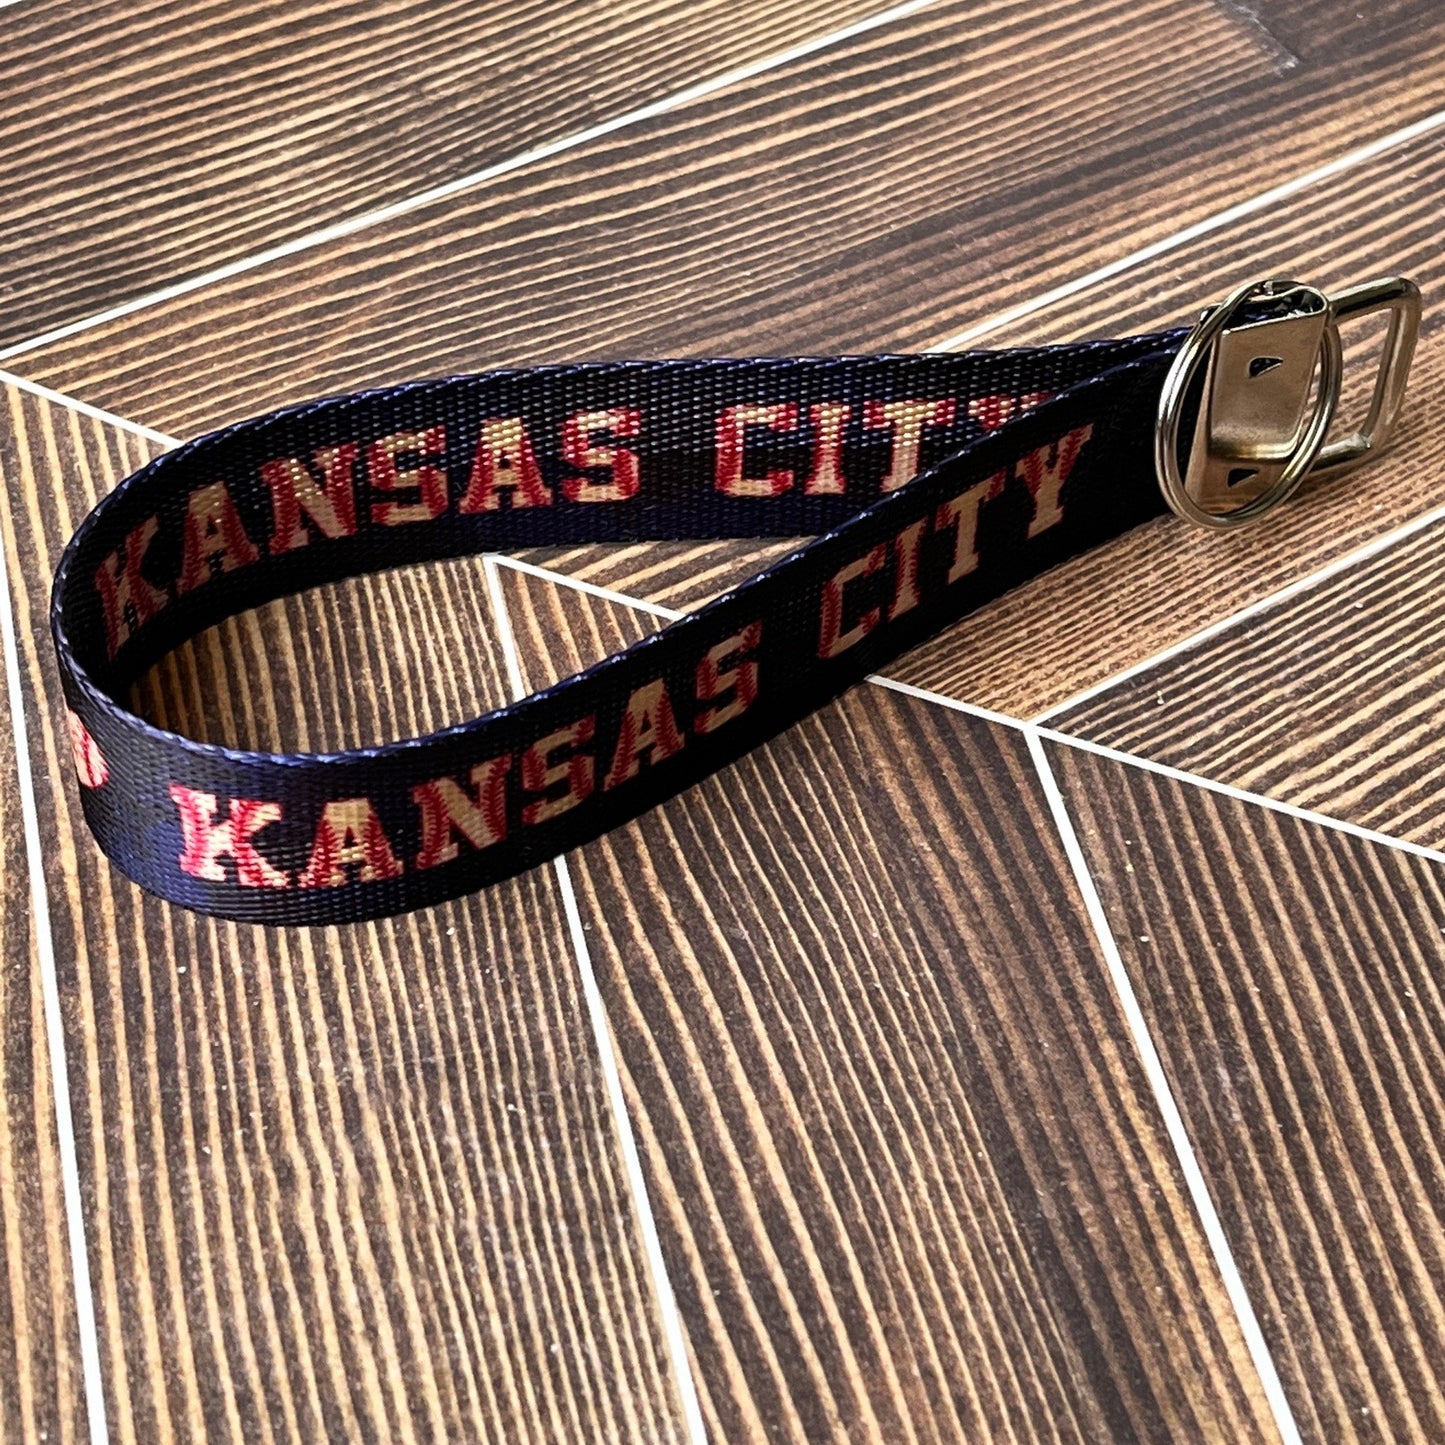 Kansas City Baseball Heart Nylon Keychain Key Fob - Sample - Clearanced